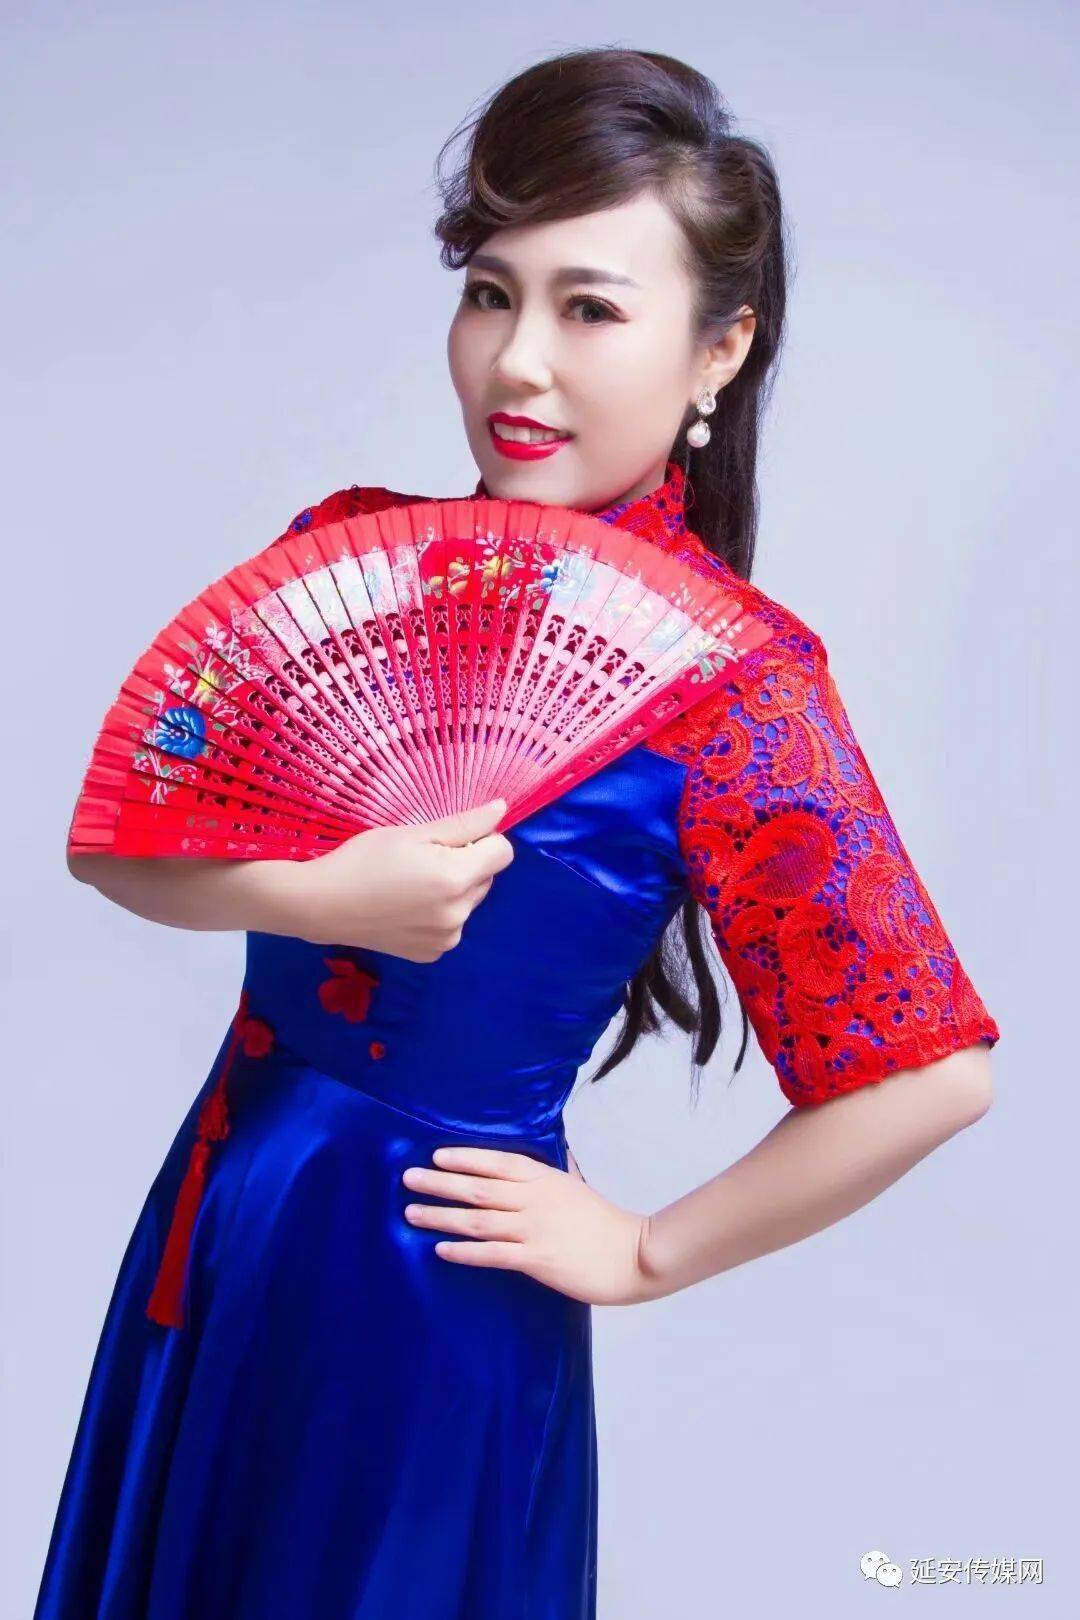 常 虹 简 介女,生于1982年,陕西省米脂人,陕北民歌手,陕西省音乐家